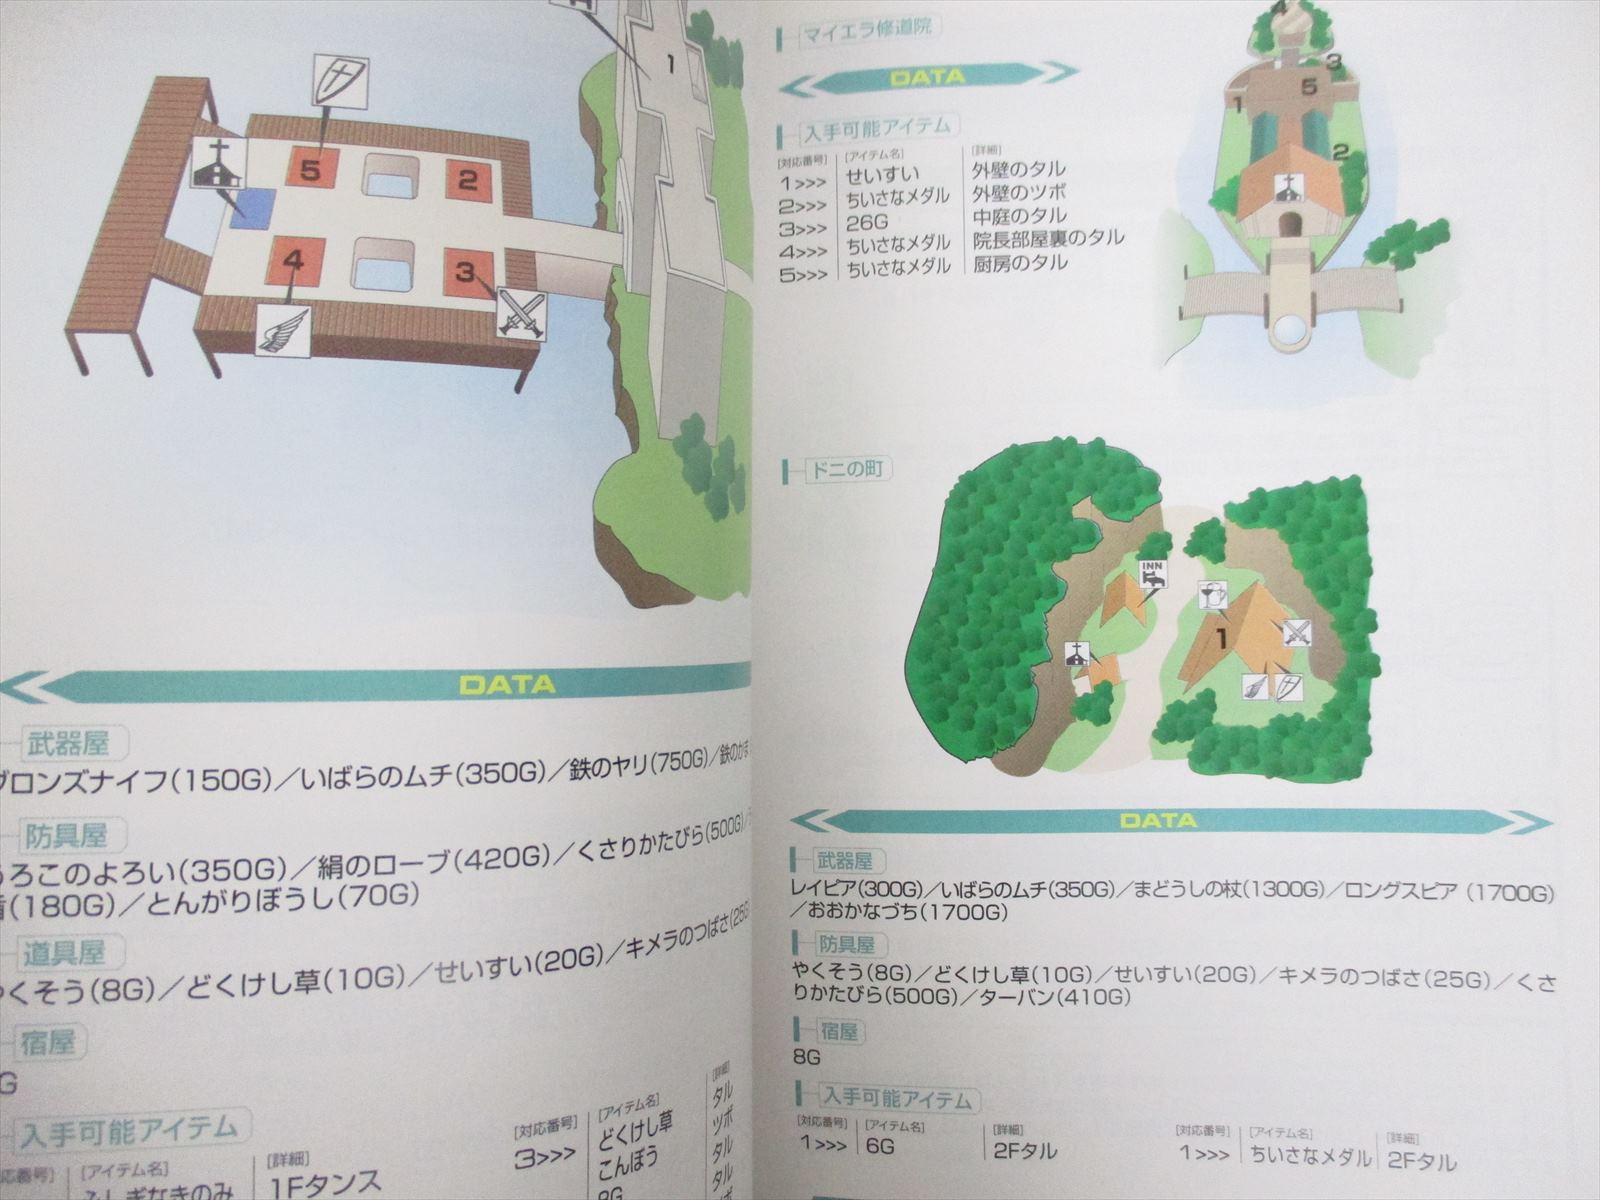 Dragon Quest Viii 8 Data Book Ps2 Cheat Guide 05 Ebay